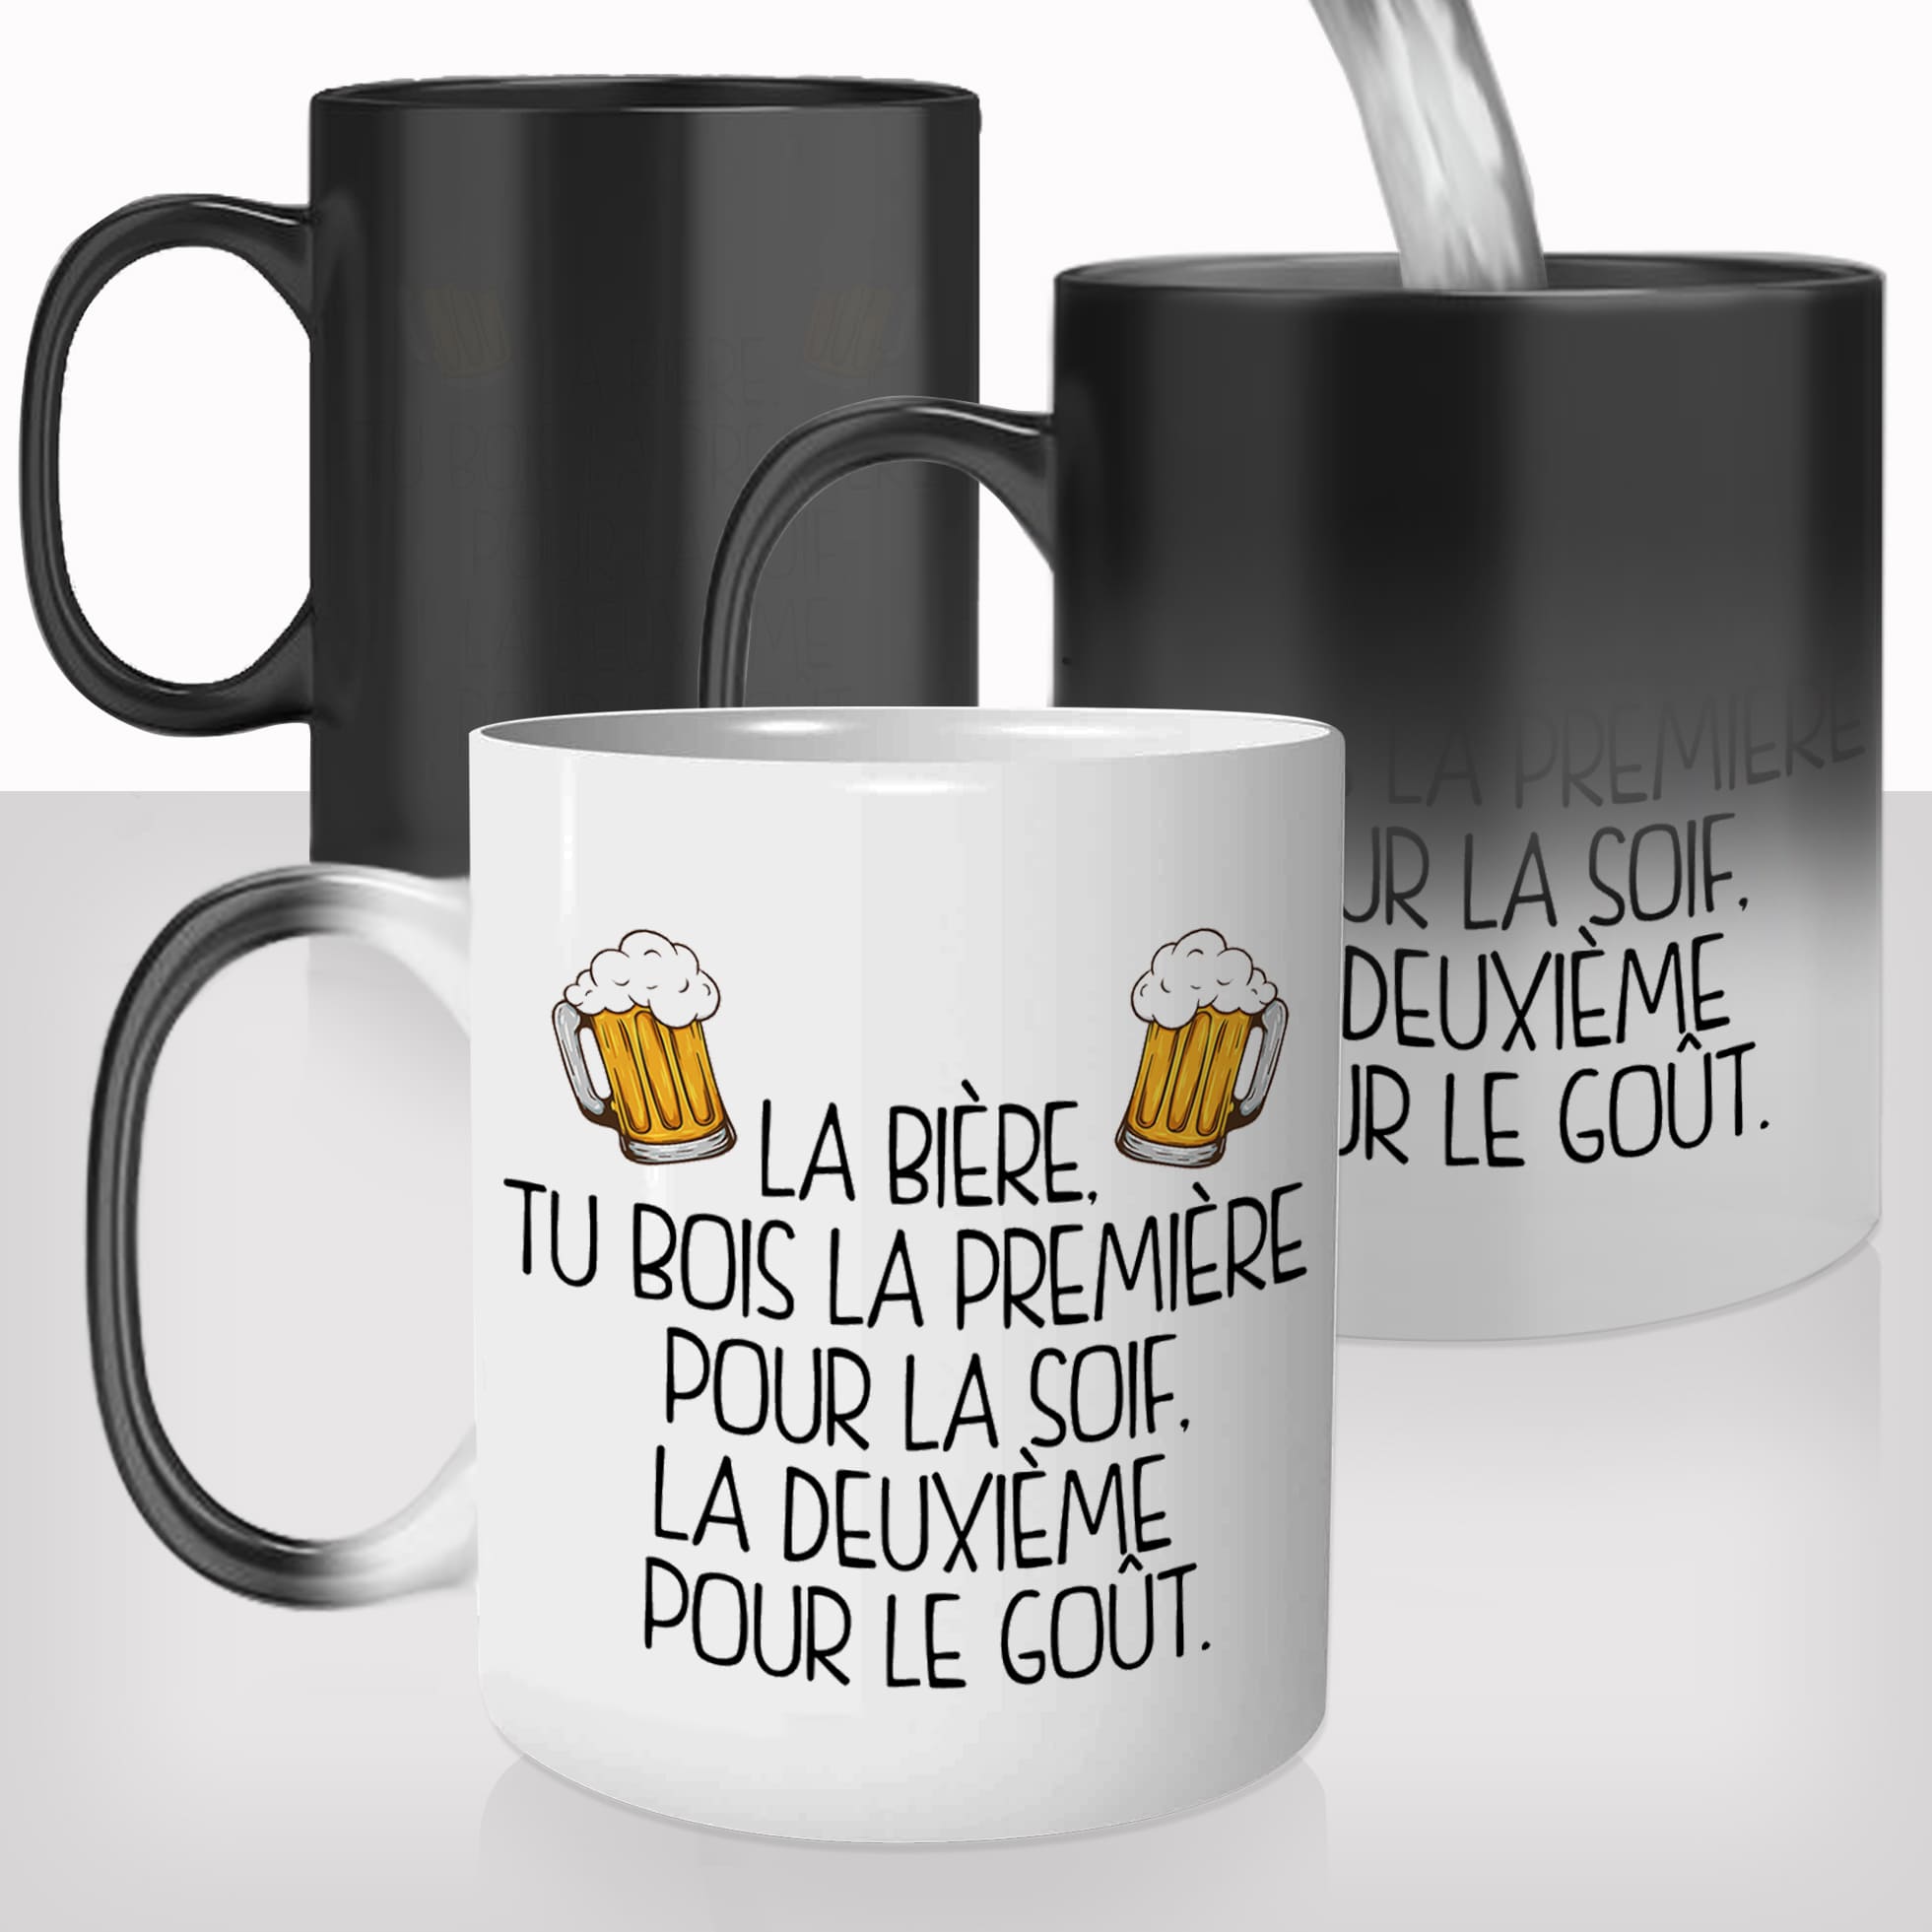 mug-tasse-magique-thermoreactif-personnalisé-biere-bar-premiere-pour-le-gout-soif-homme-idée-cadeau-original-personnalisable-france